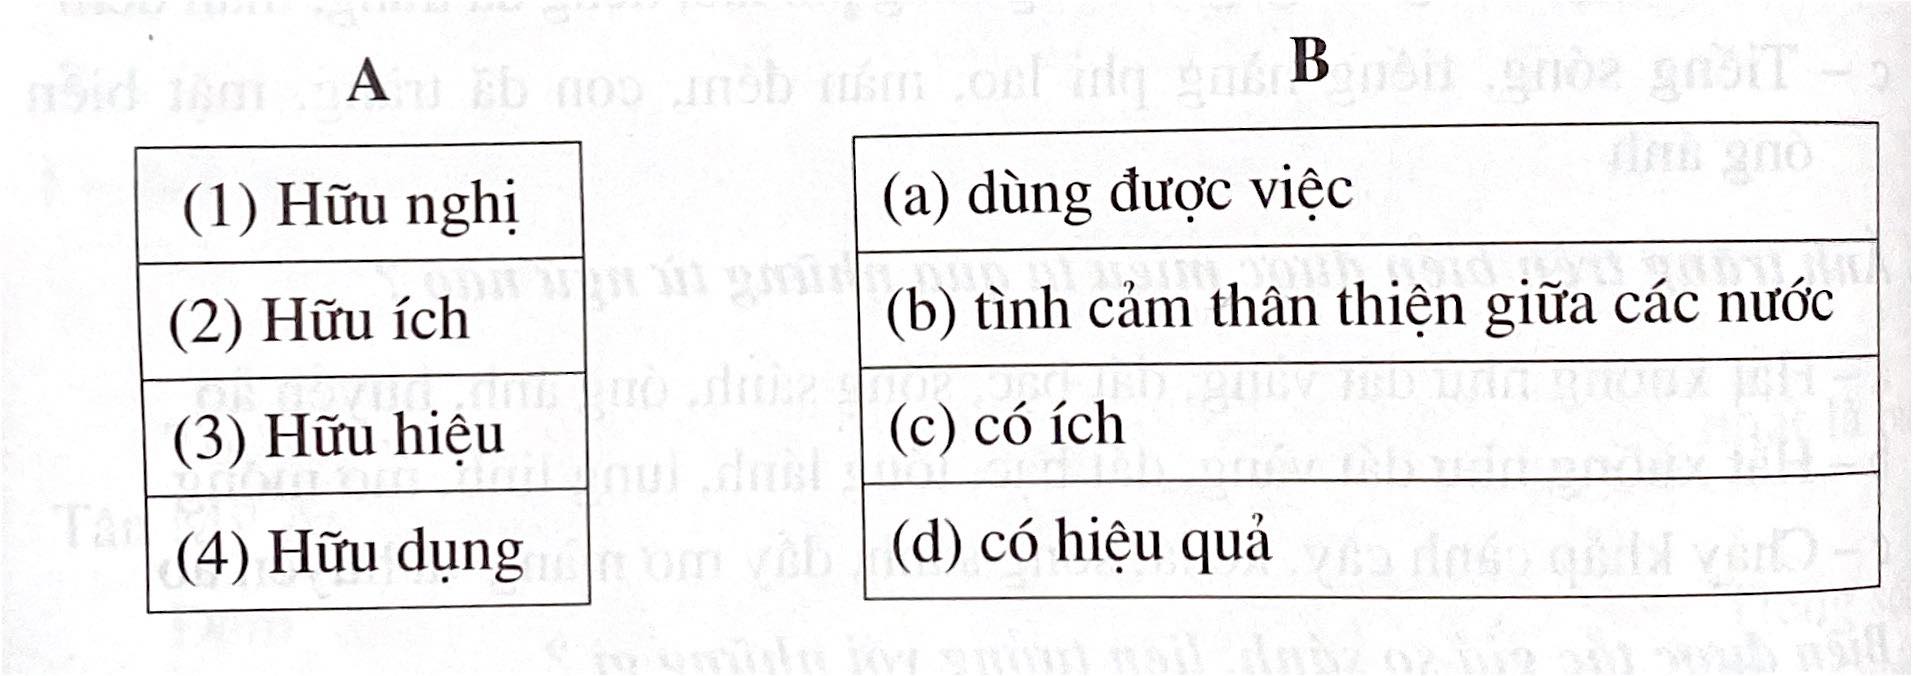 Phiếu bài tập tuần 6 tiếng Việt 5 tập 1